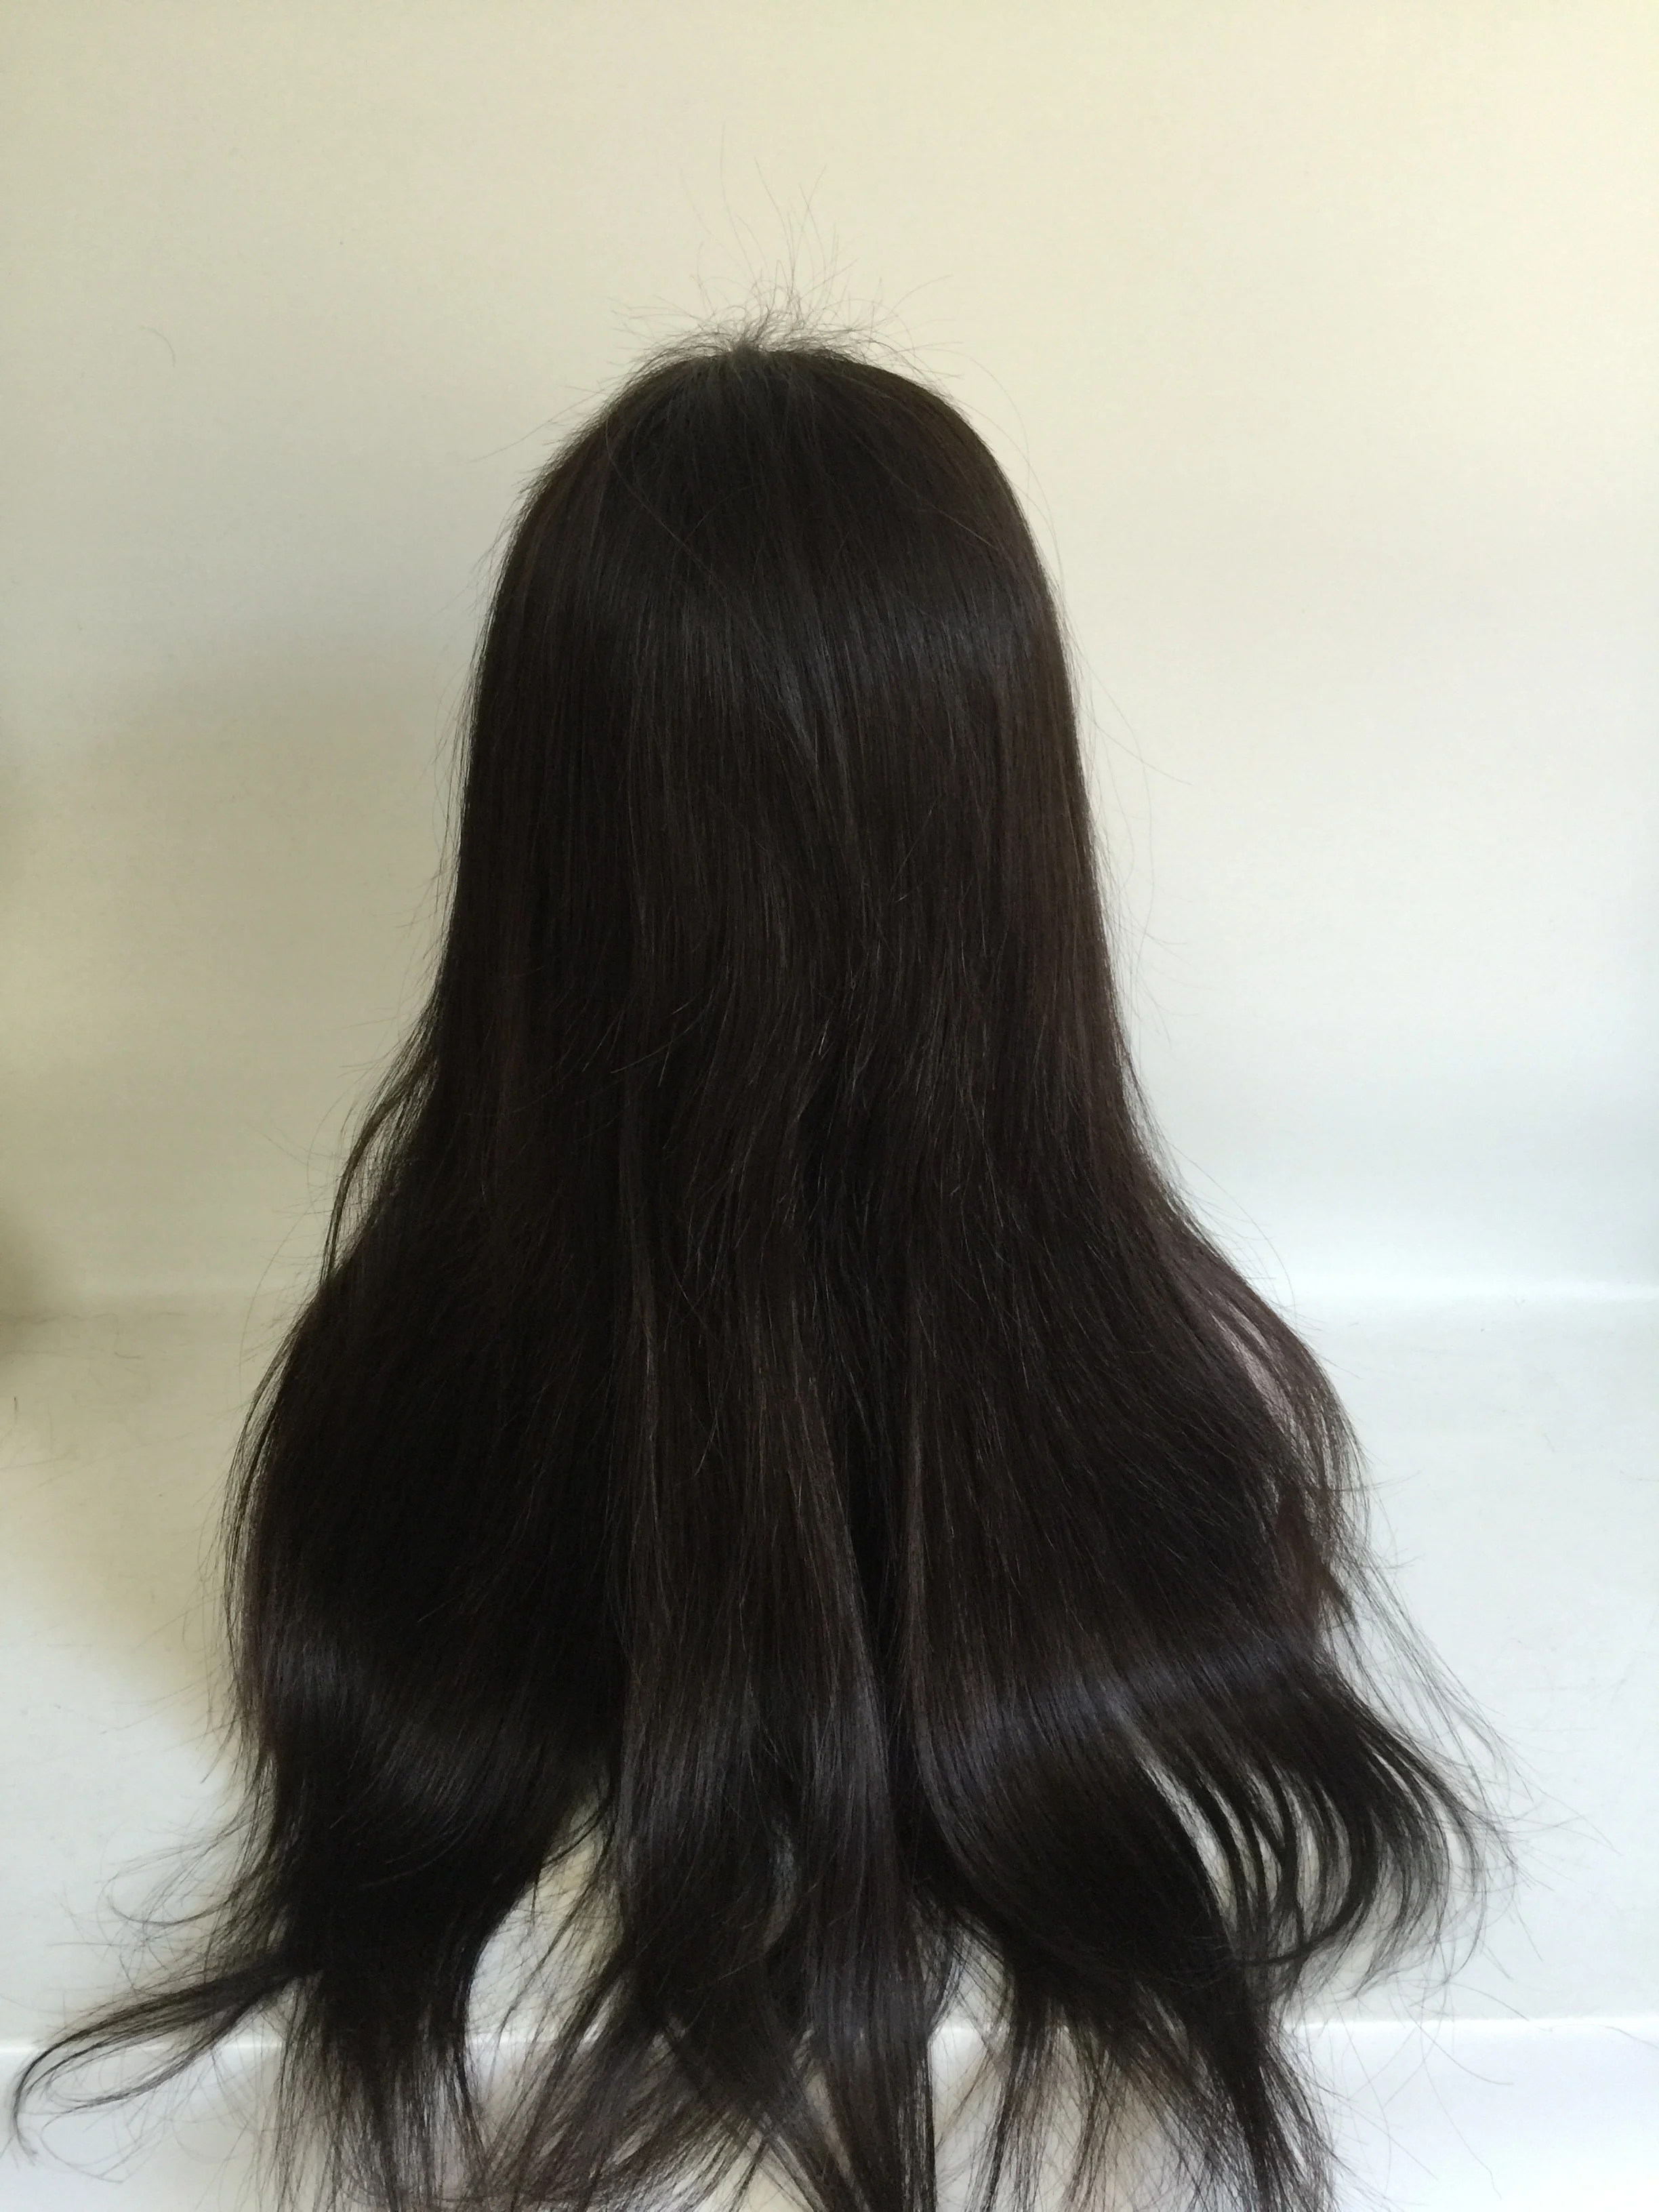 头发材料 100% 人发 头发的颜色 天然黑色 头发长度 20英寸的 